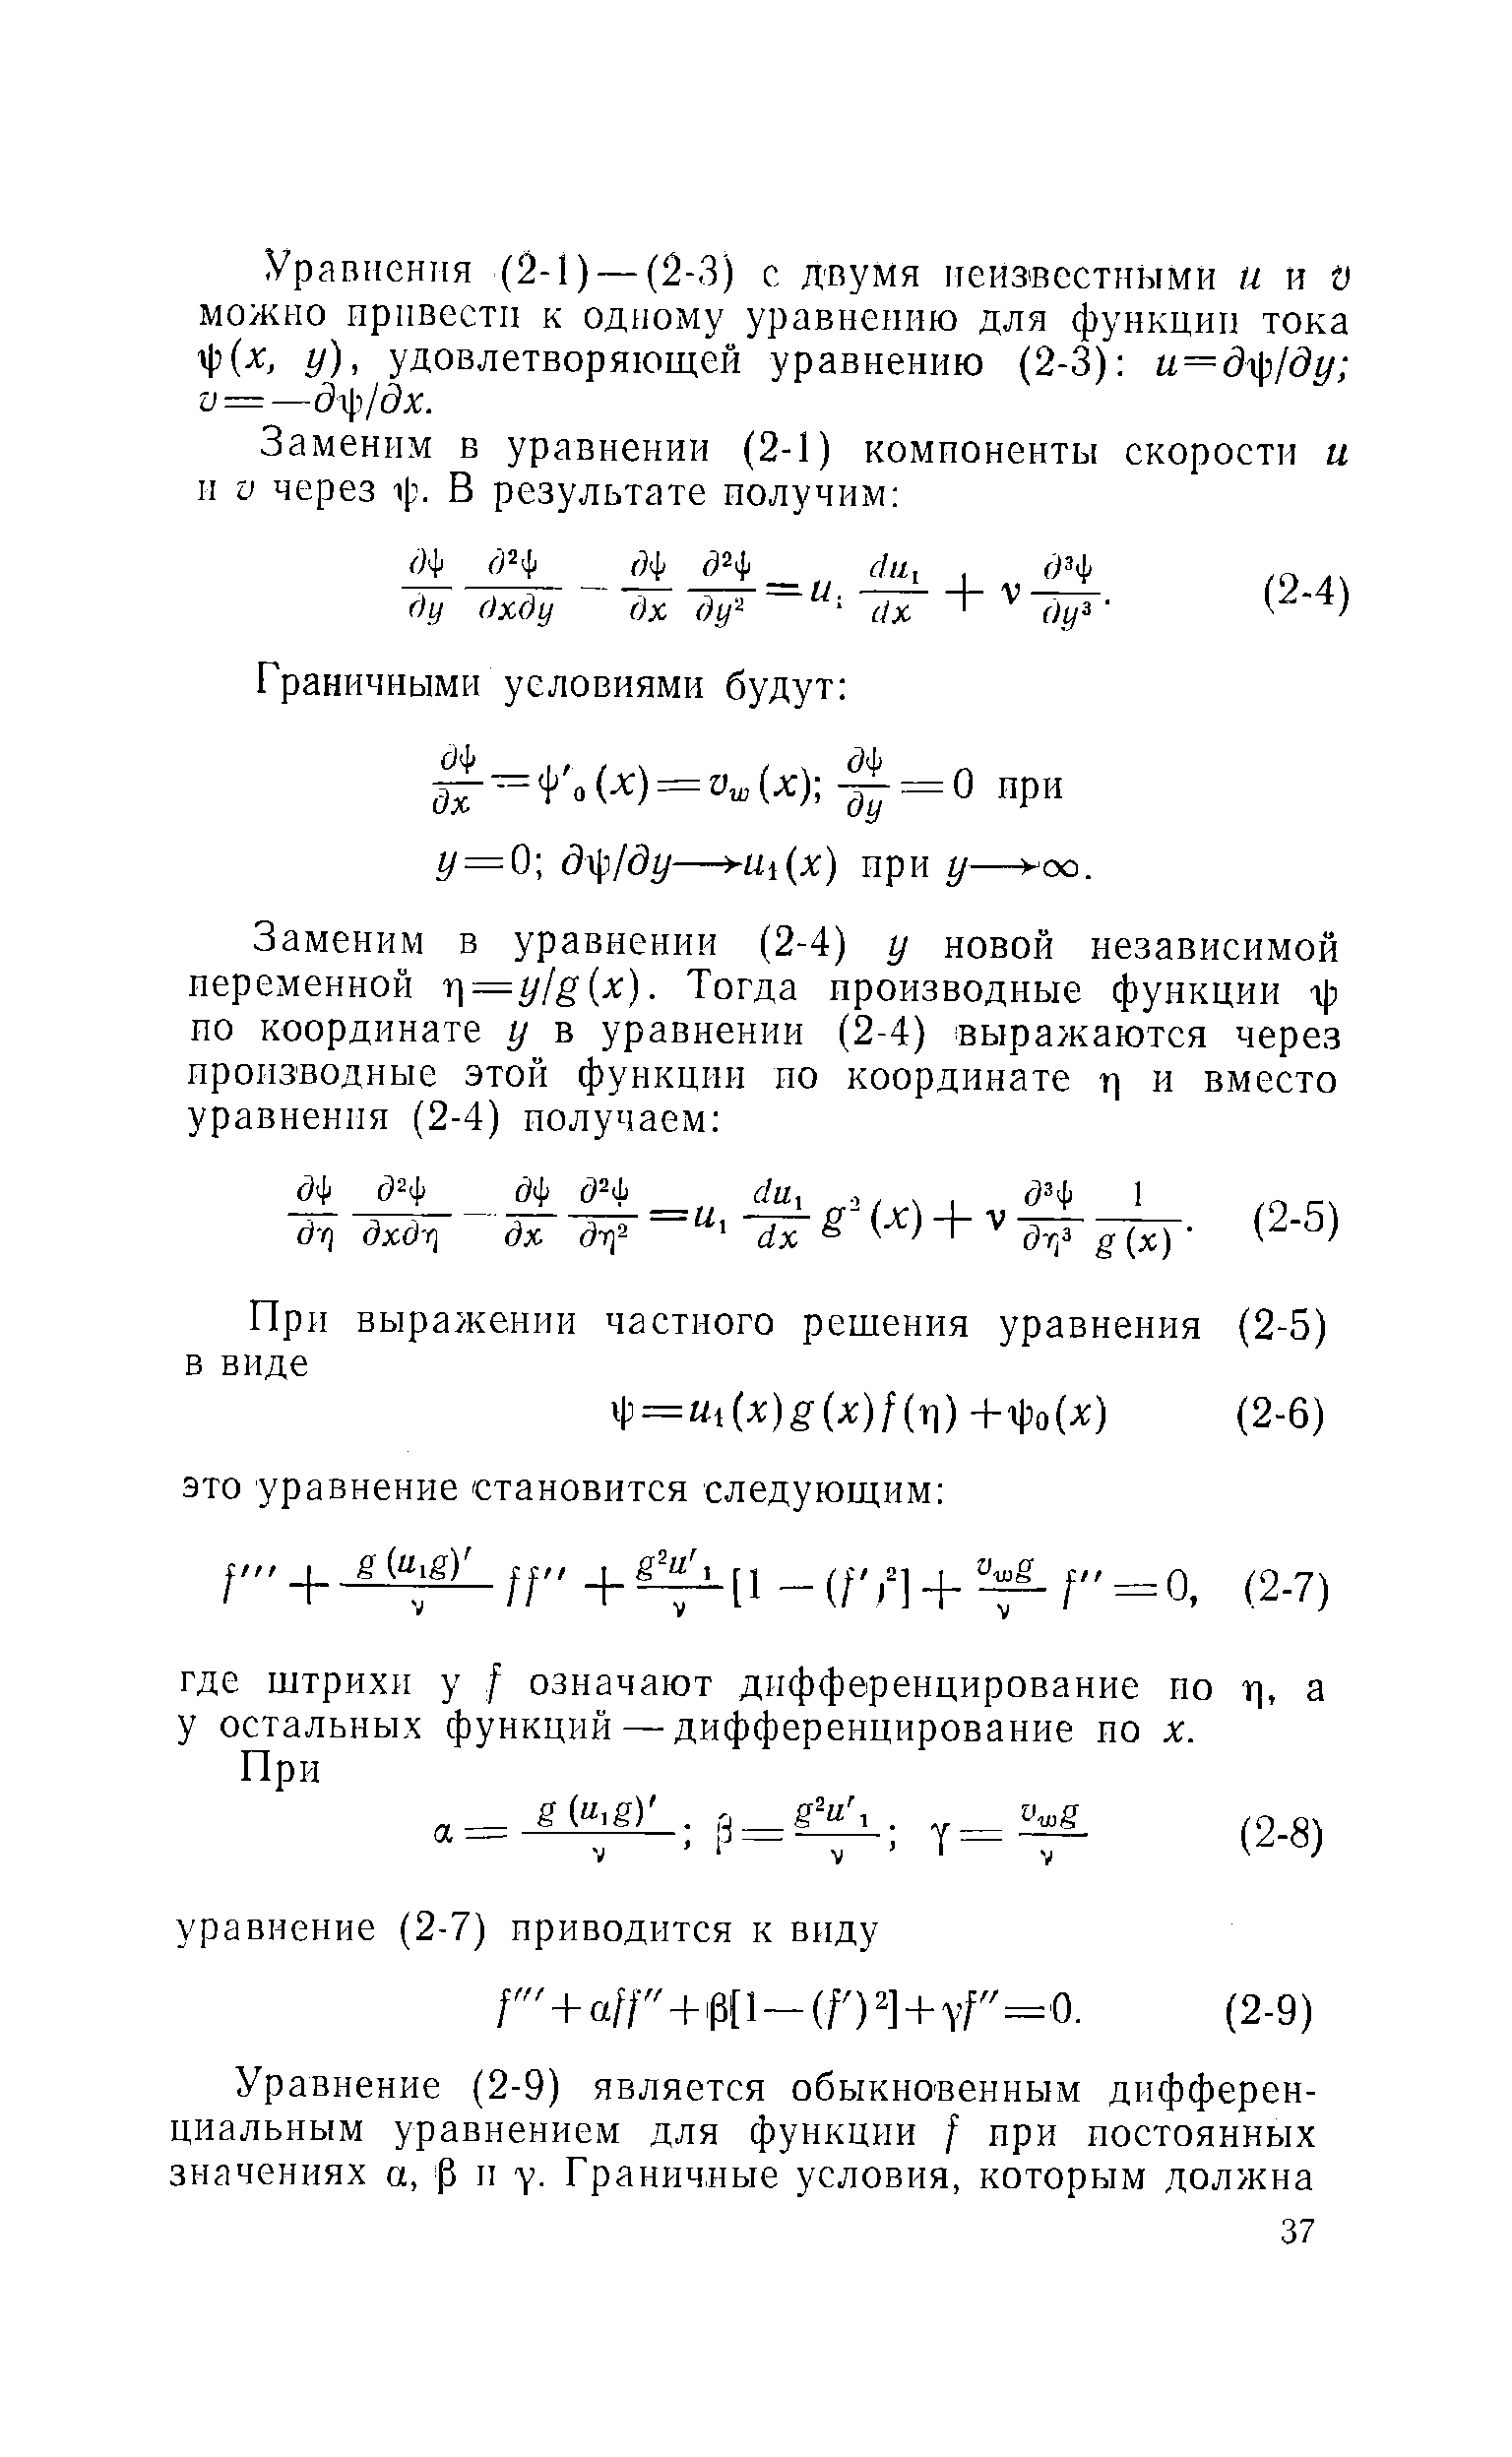 Уравнения (2-1) — (2-3) с двумя неизвестными и и V можно привести к одному уравнению для функции тока ф(л , у), удовлетворяющей уравнению (2-3) и=д р/ду у =—д т/дх.
